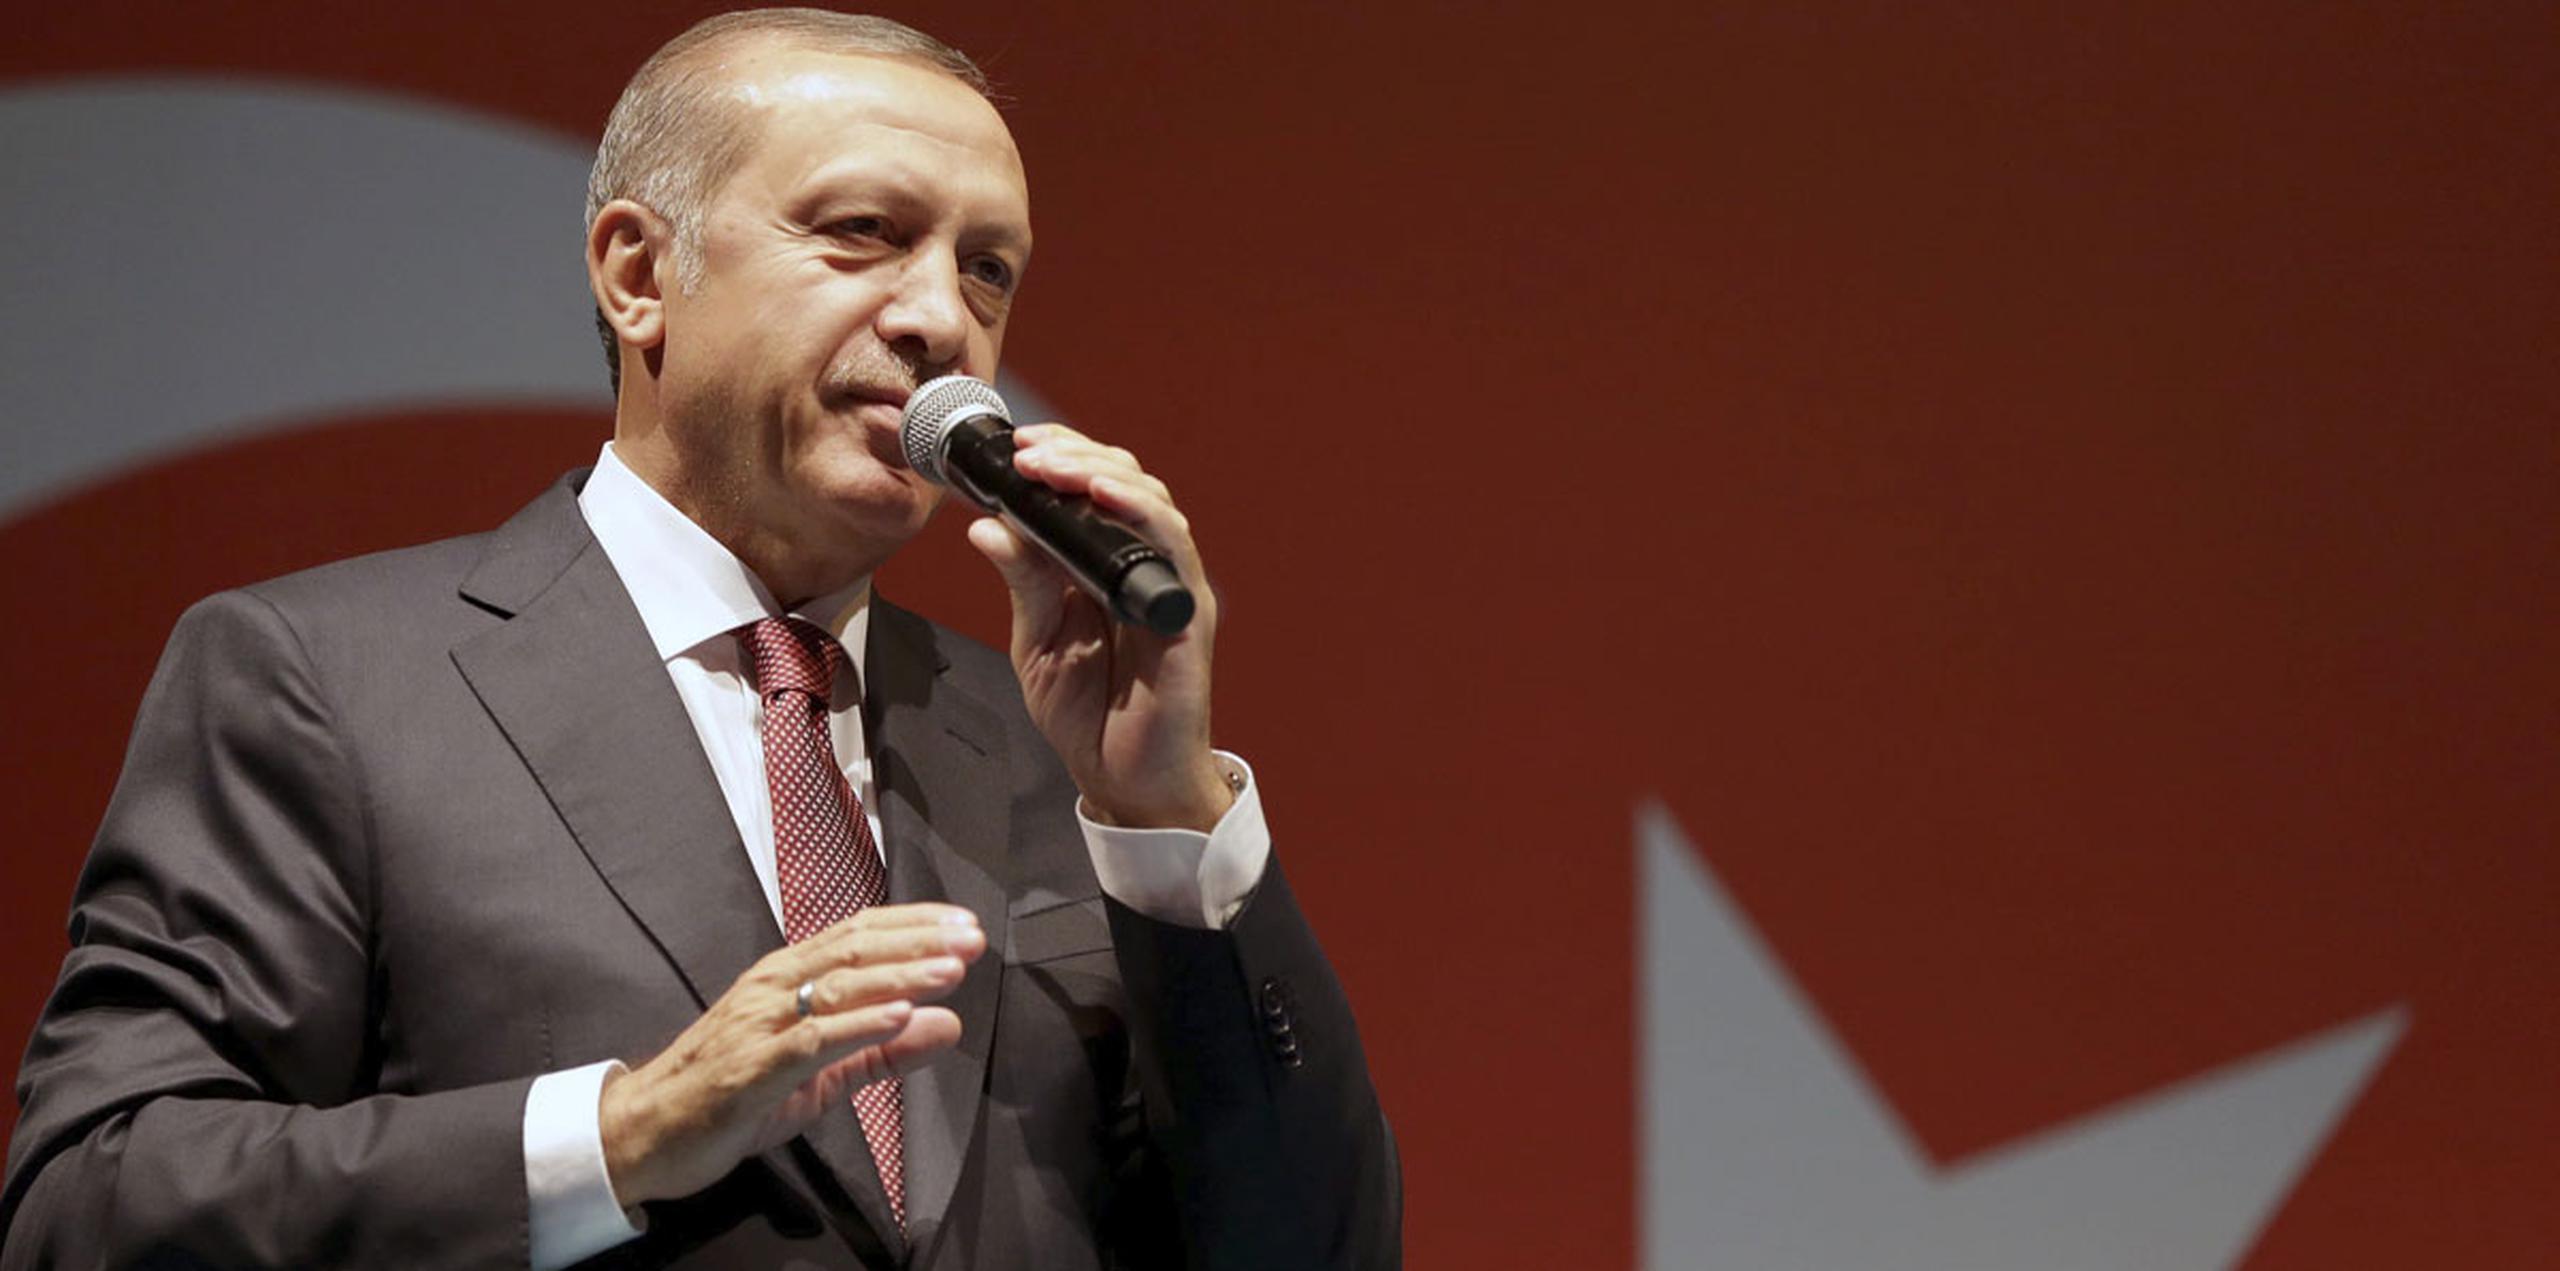 Hablando ante centenares de partidarios en las afueras de su residencia en Estambul en las primeras horas del martes, Erdogan respondió a llamados a la pena de muerte diciendo simplemente: "No se pueden soslayar las demandas del pueblo". (EFE)